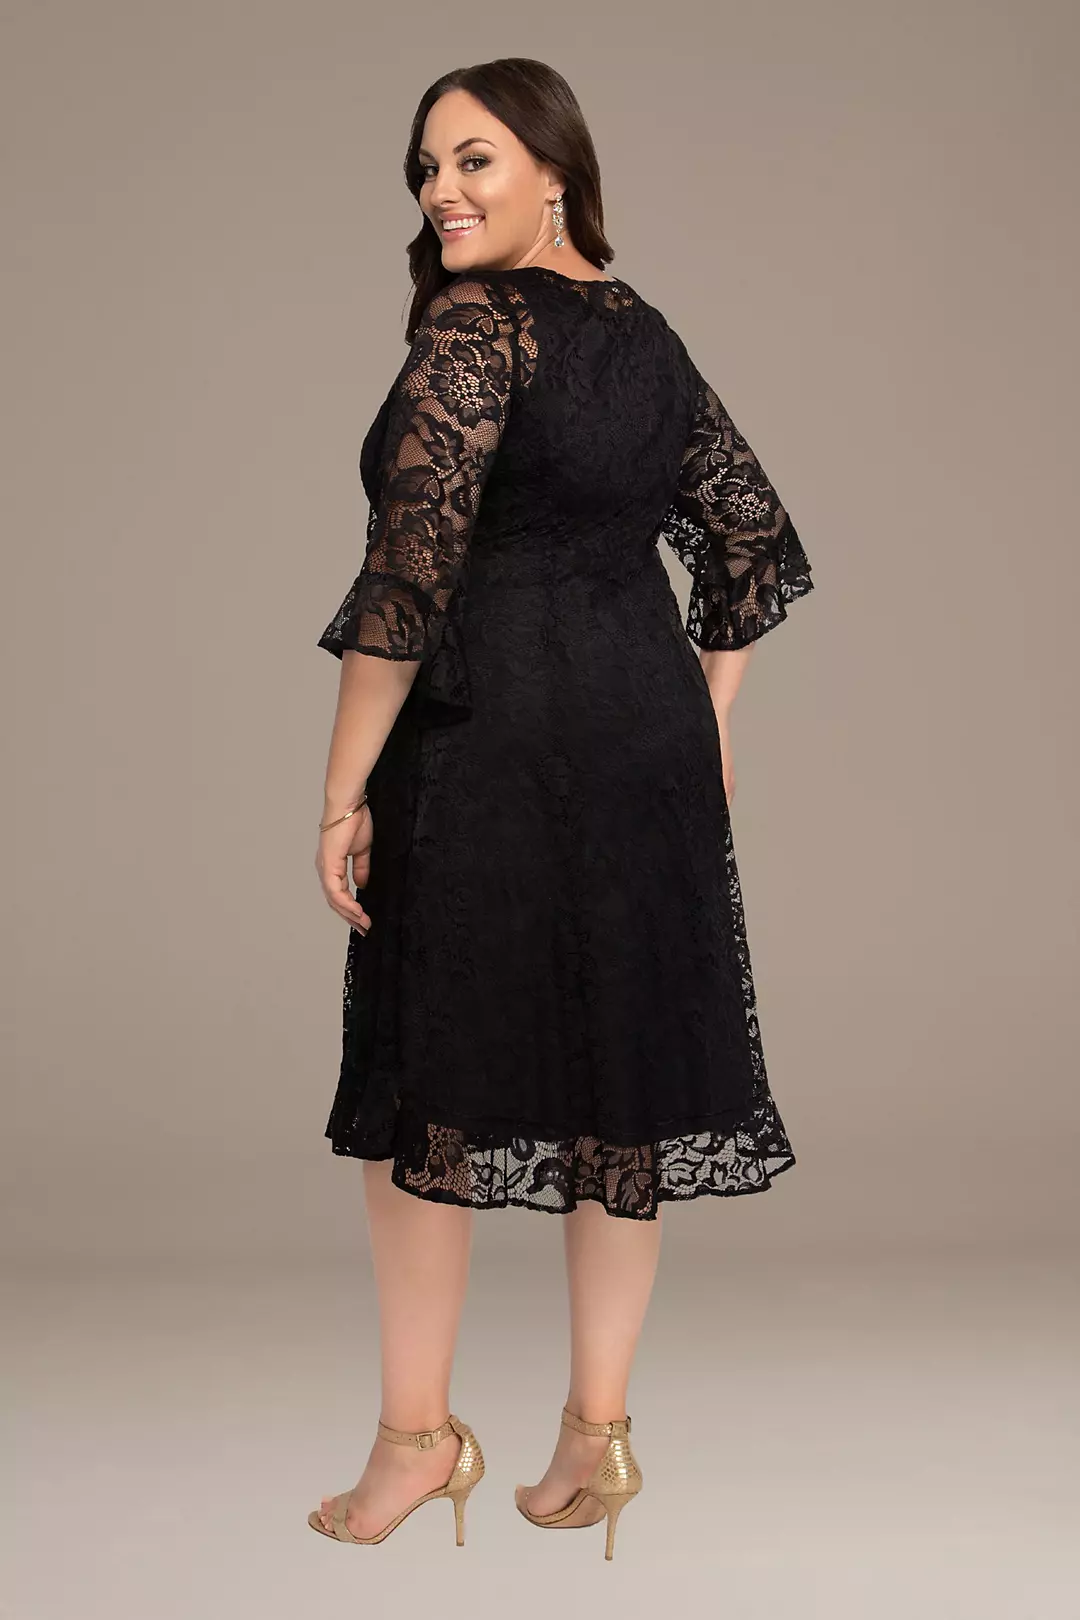 Livi Lace Plus Size Dress Image 2